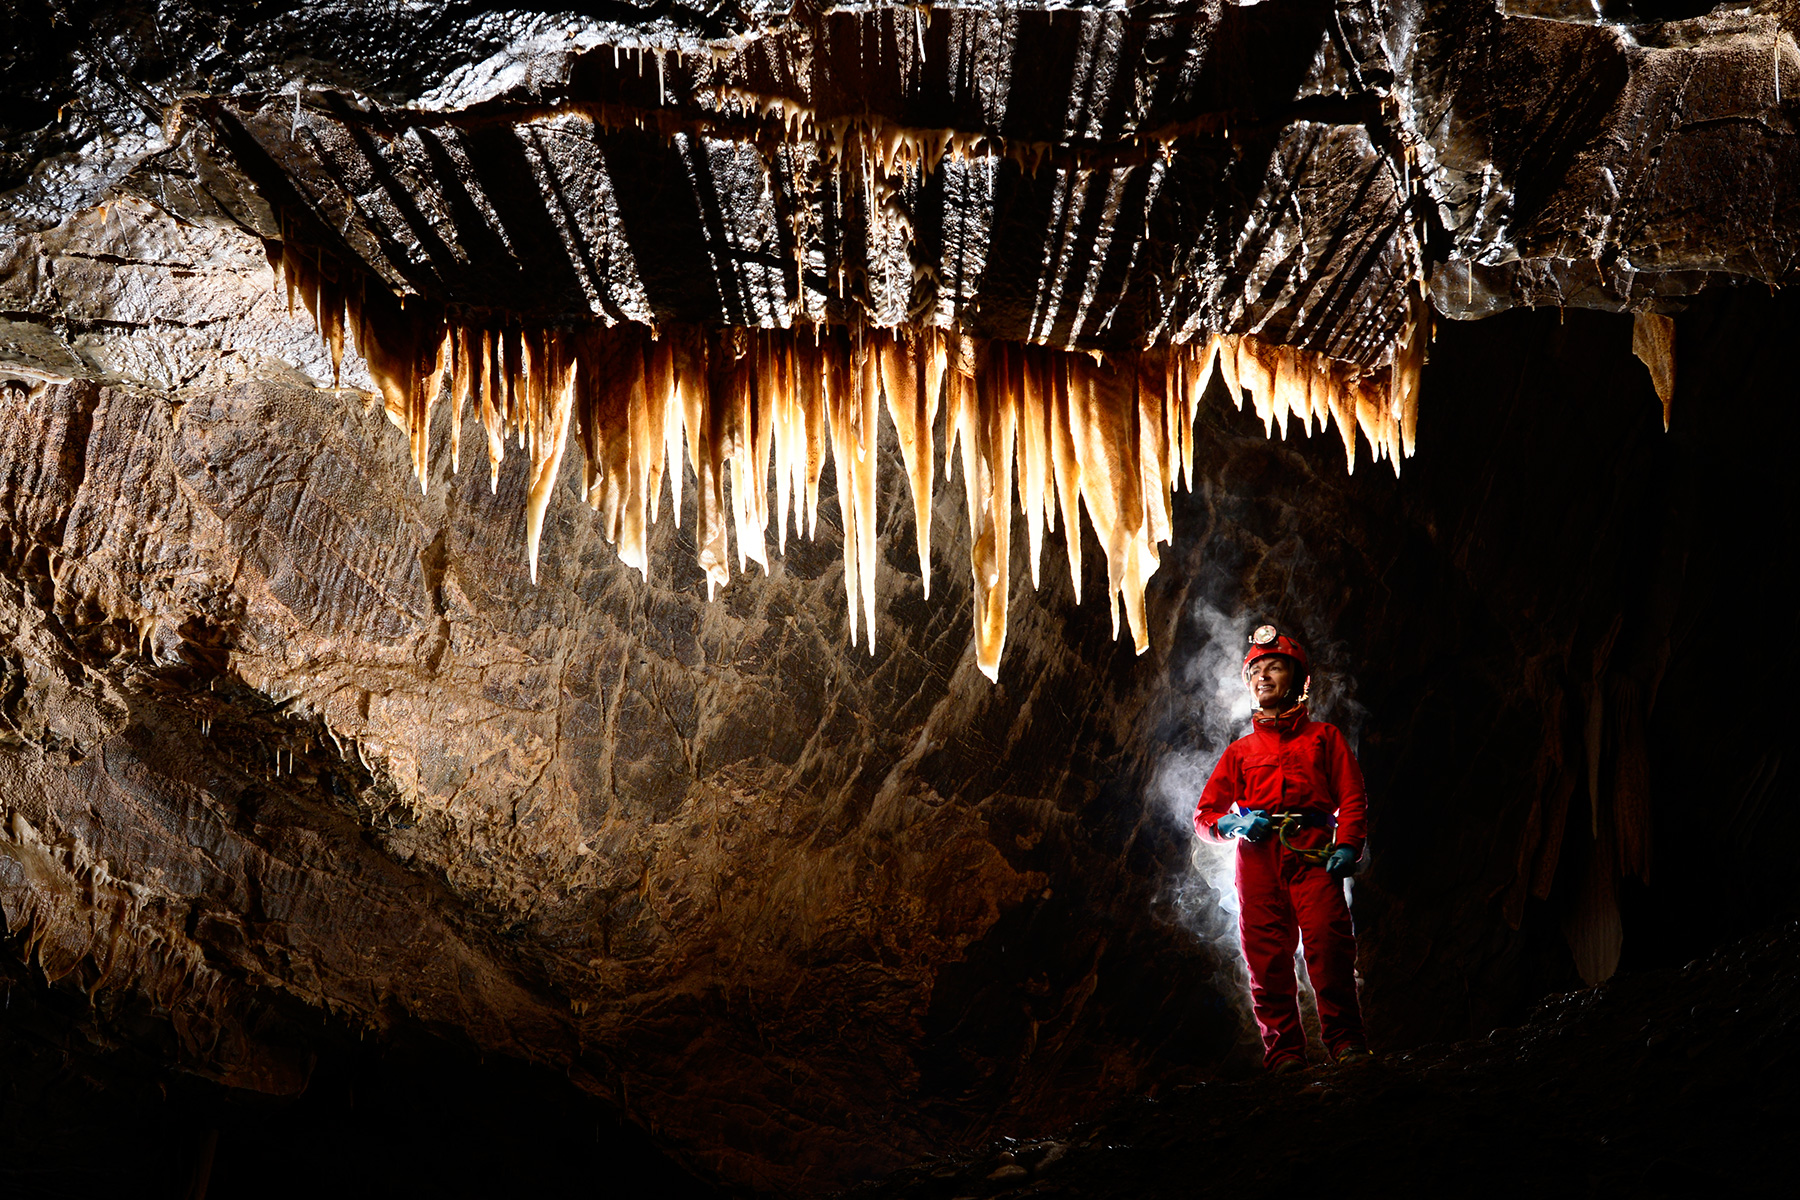 Stara Amaterska Cave (Tchéquie, Moravie, Parc National de Podiji) - Rideau de stalactites avec spéléo derrière.